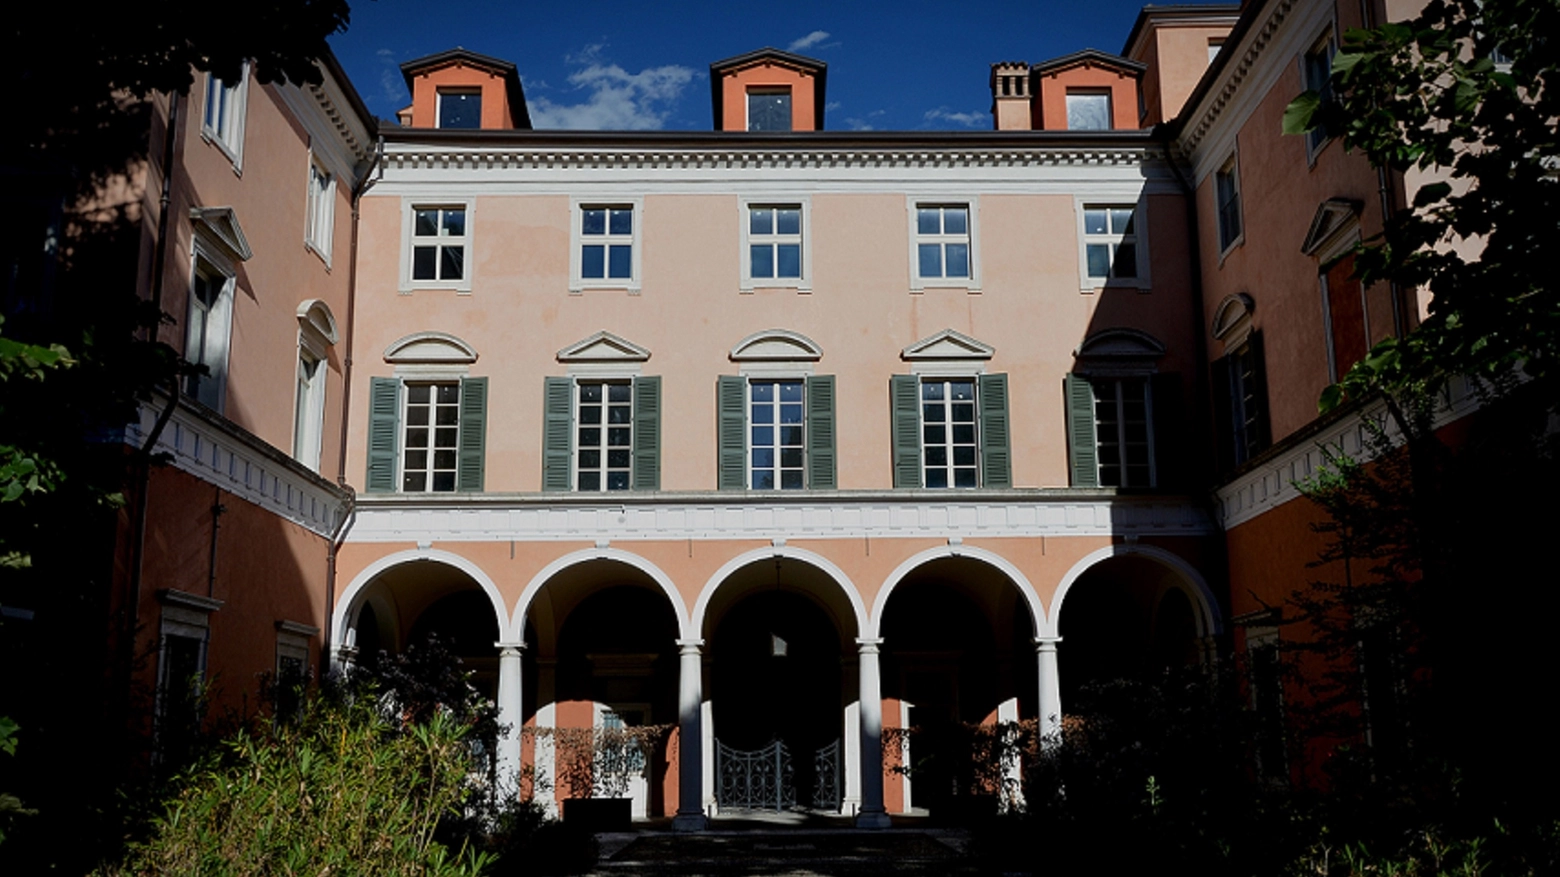 Palazzo Ferrazzi